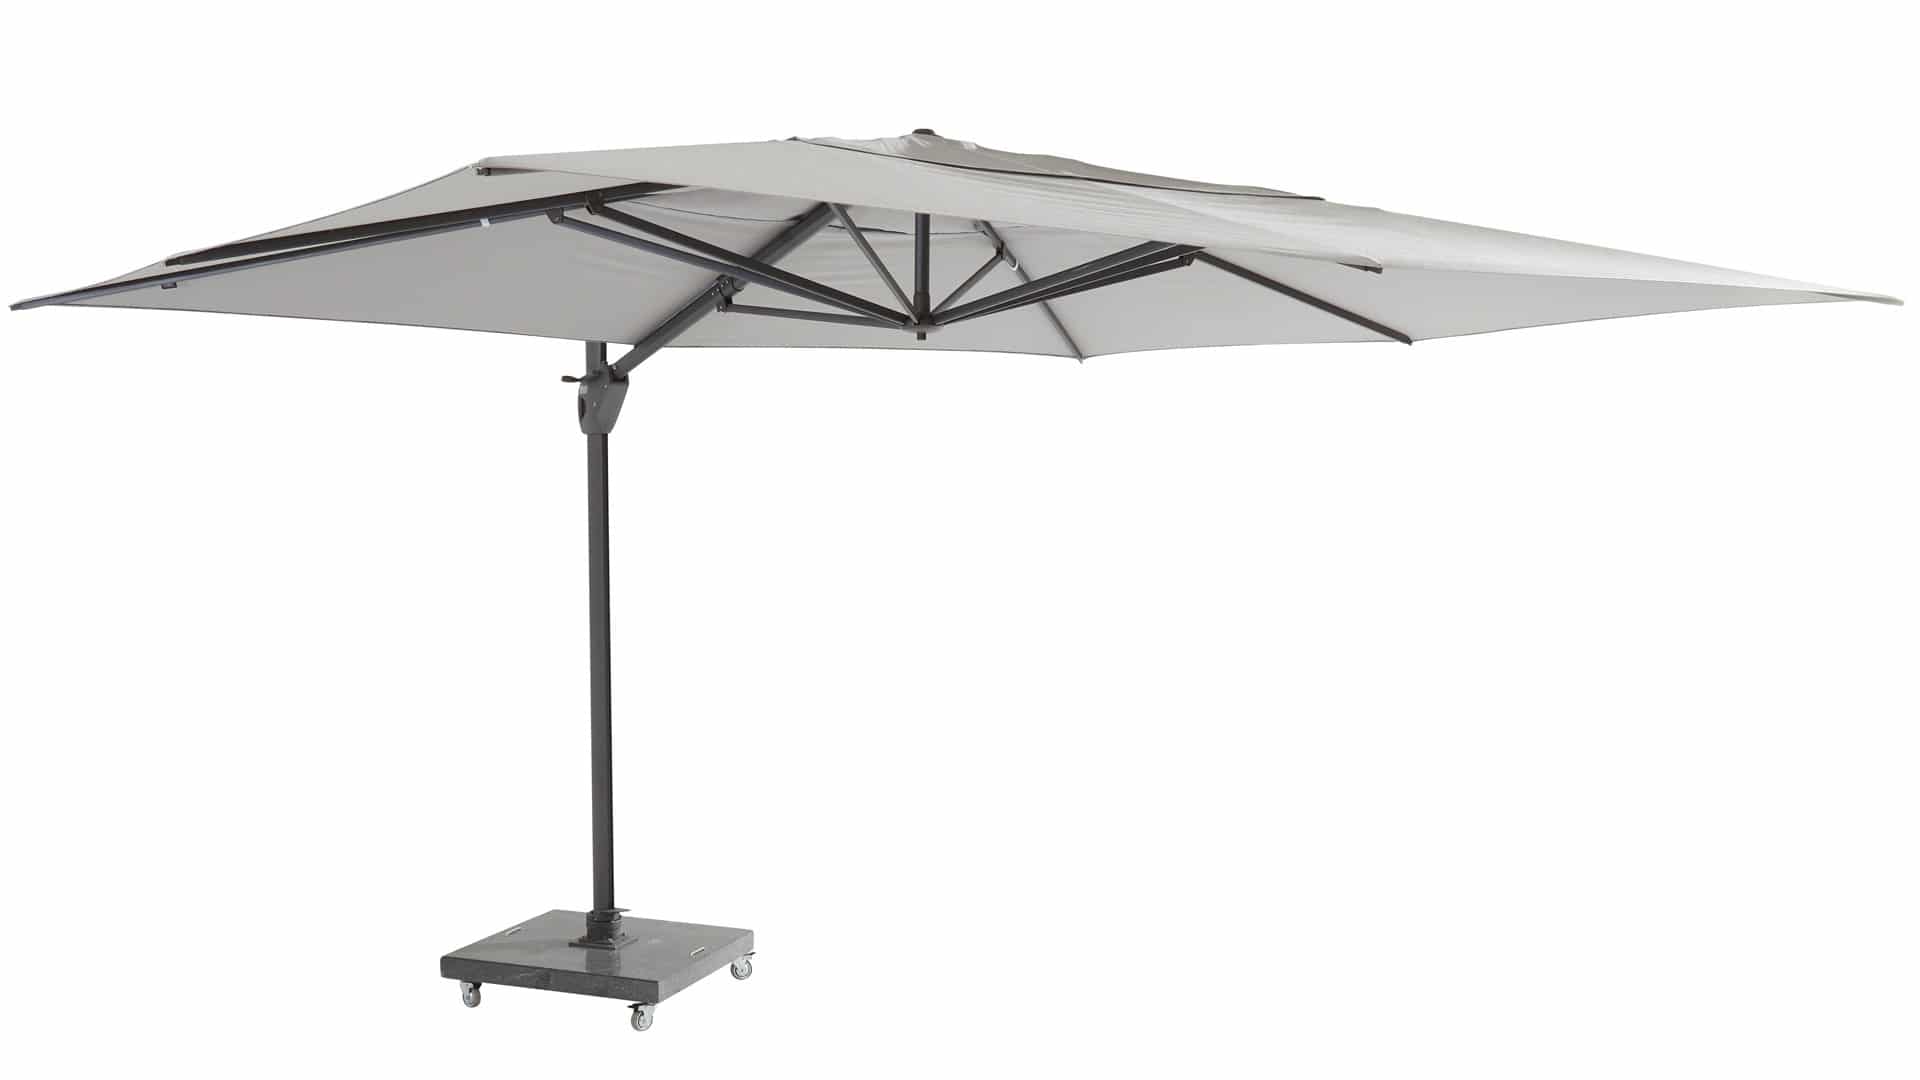 Horizontaal Inschrijven Overzicht 4 Seasons Outdoor Hacienda parasol 300 x 400 cm mid-grey, antraciet frame  kopen? | Latour Tuinmeubelen